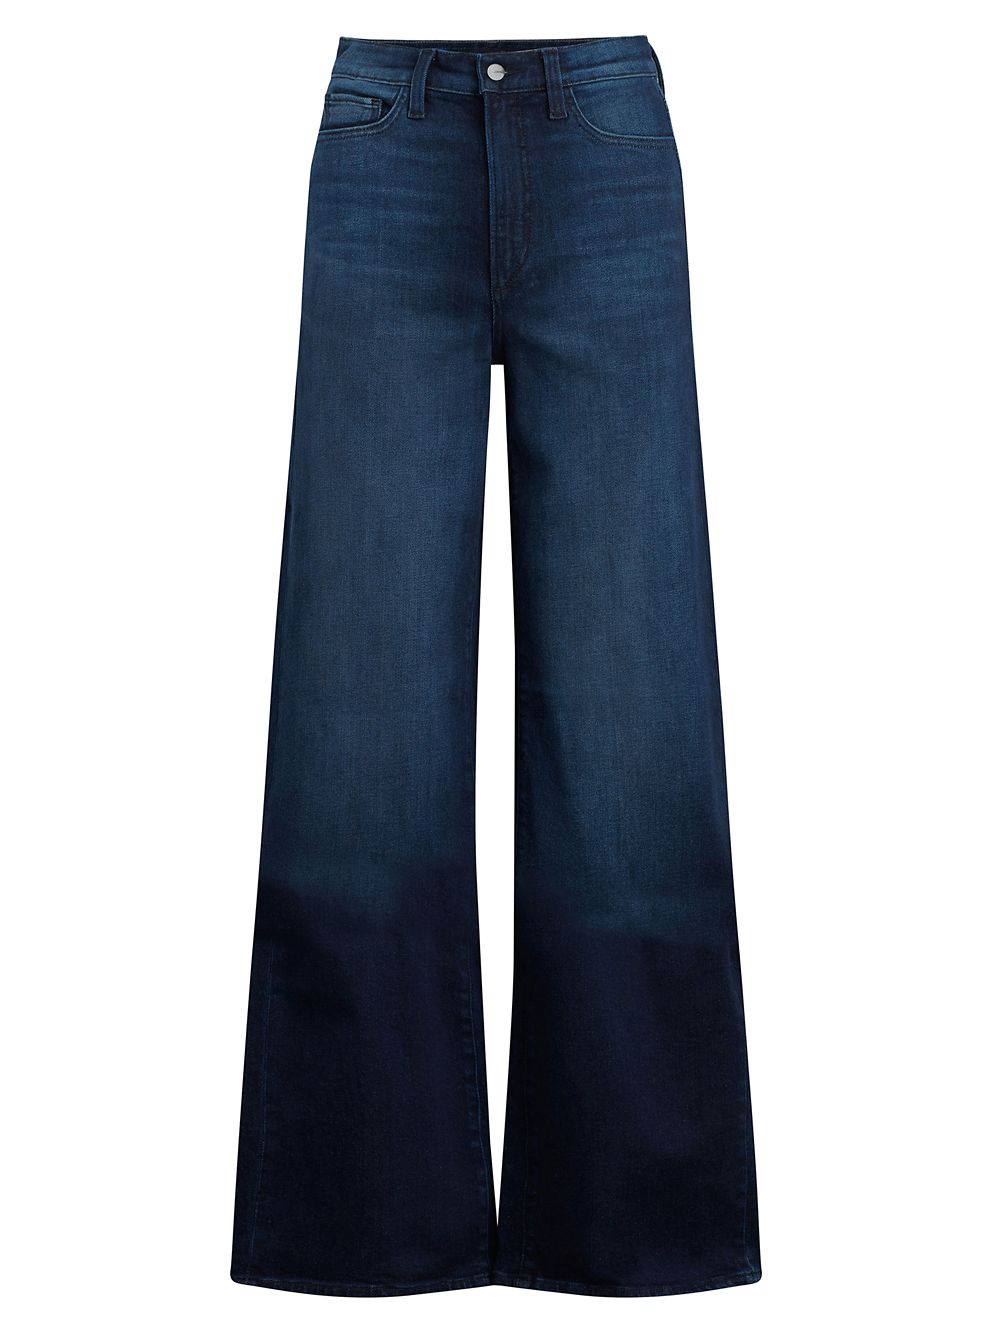 Эластичные широкие джинсы Mia с высокой посадкой Joe's Jeans широкие джинсы с высокой посадкой nermorosa joe s jeans синий